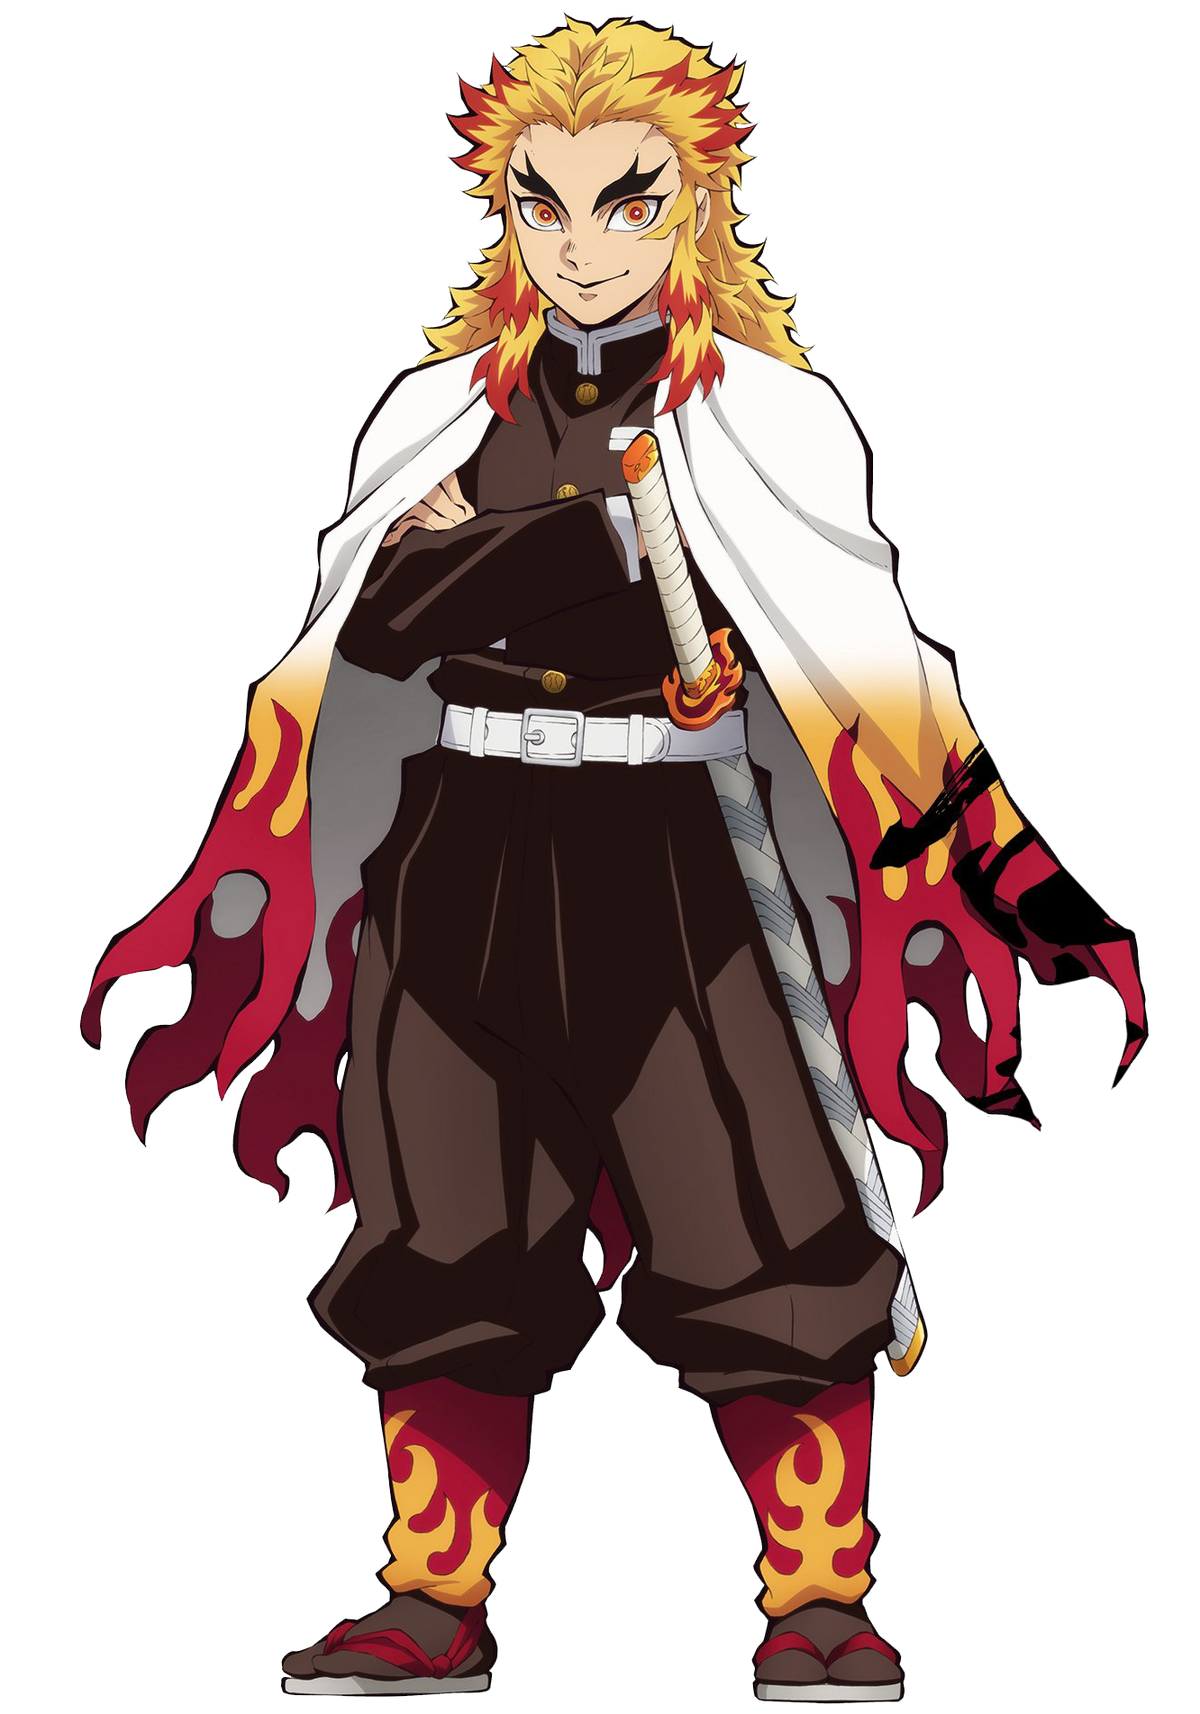 Rengoku Kyoujurou từ Kimetsu no Yaiba là một trong những nhân vật đáng yêu nhất của anime. Hãy xem hình ảnh của chúng tôi về anh ta trên trang Wikia và khám phá thêm nhiều thông tin hữu ích về Kimetsu no Yaiba.